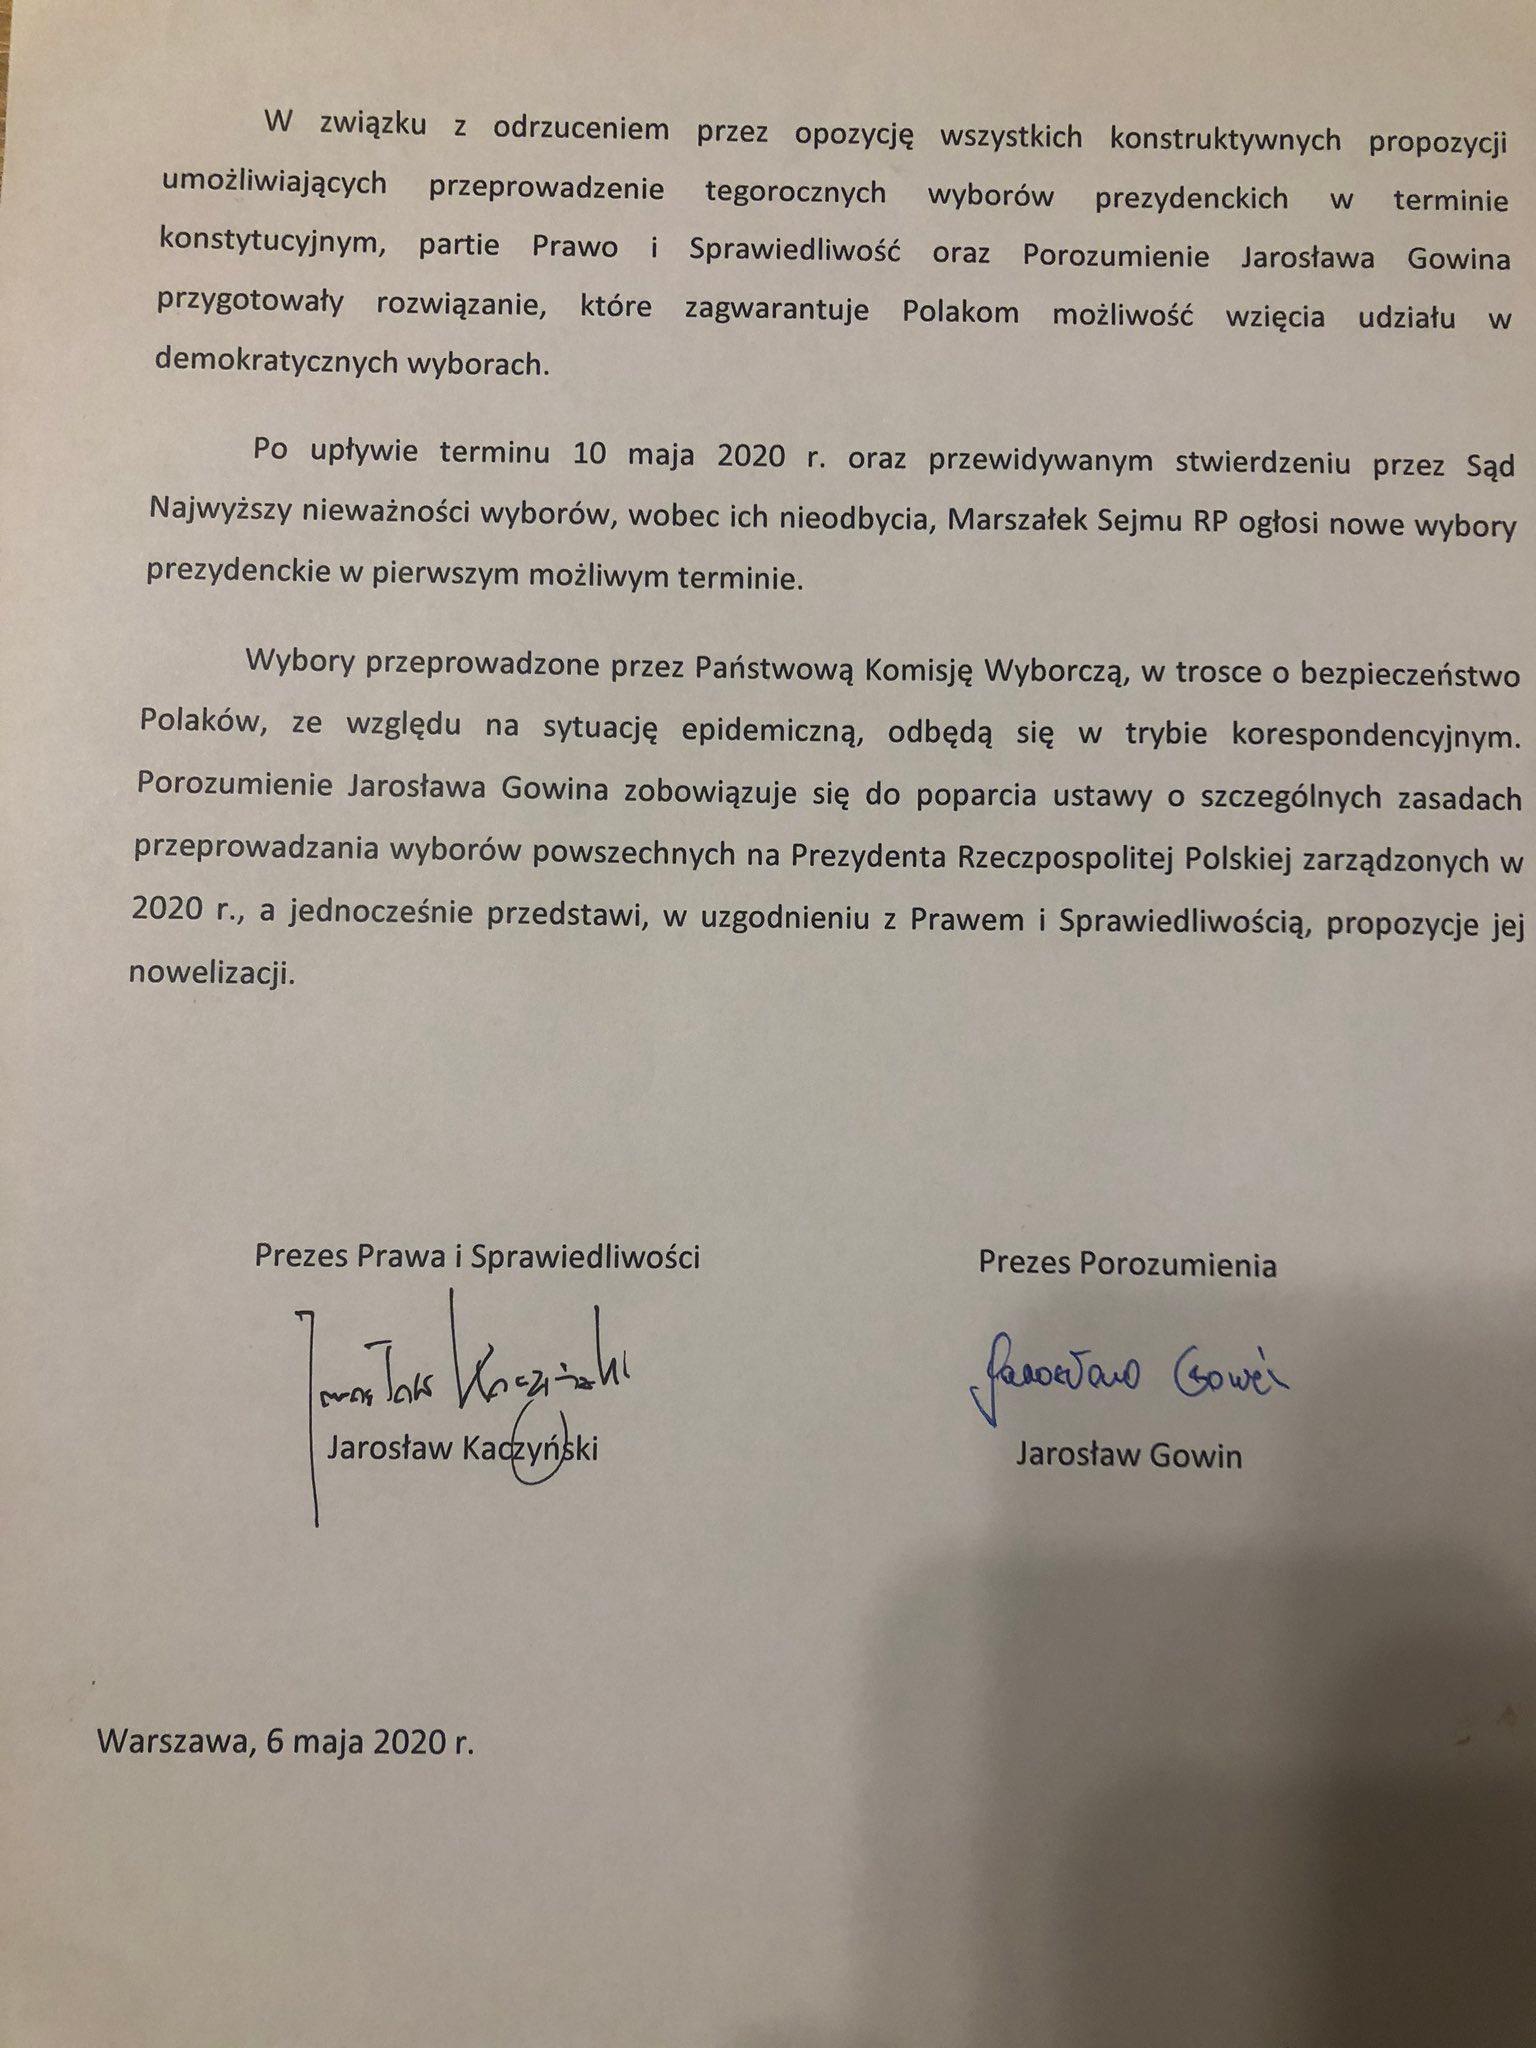 Porozumienie między Jarosławem Kaczyńskim a Jarosławem Gowinem